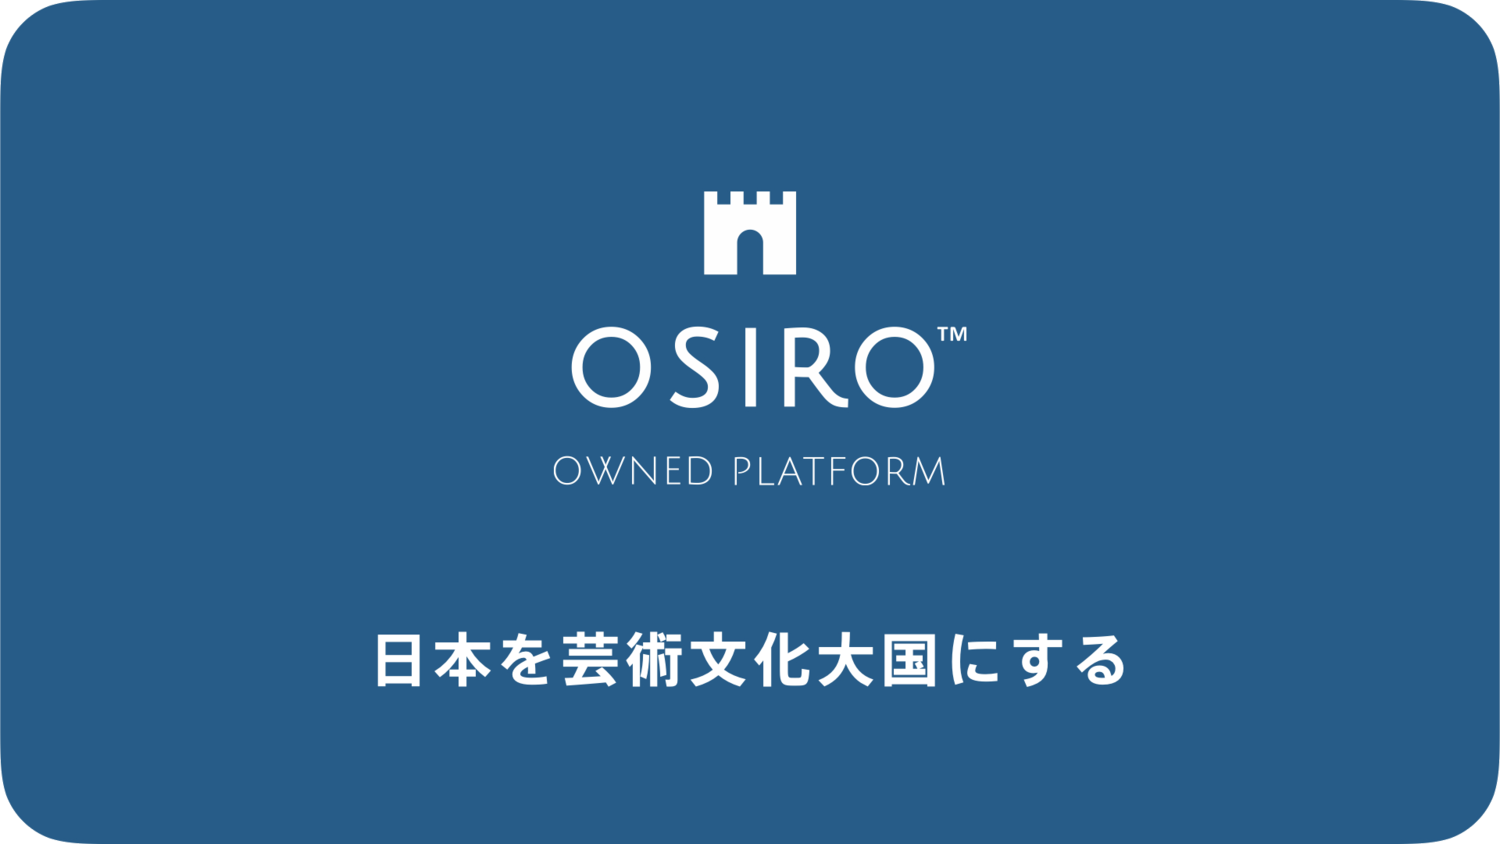 「コミュニティ特化型オウンドプラットフォーム「OSIRO」を開発提供するオシロがVCから初めての資金調達を実施」のサムネイル画像